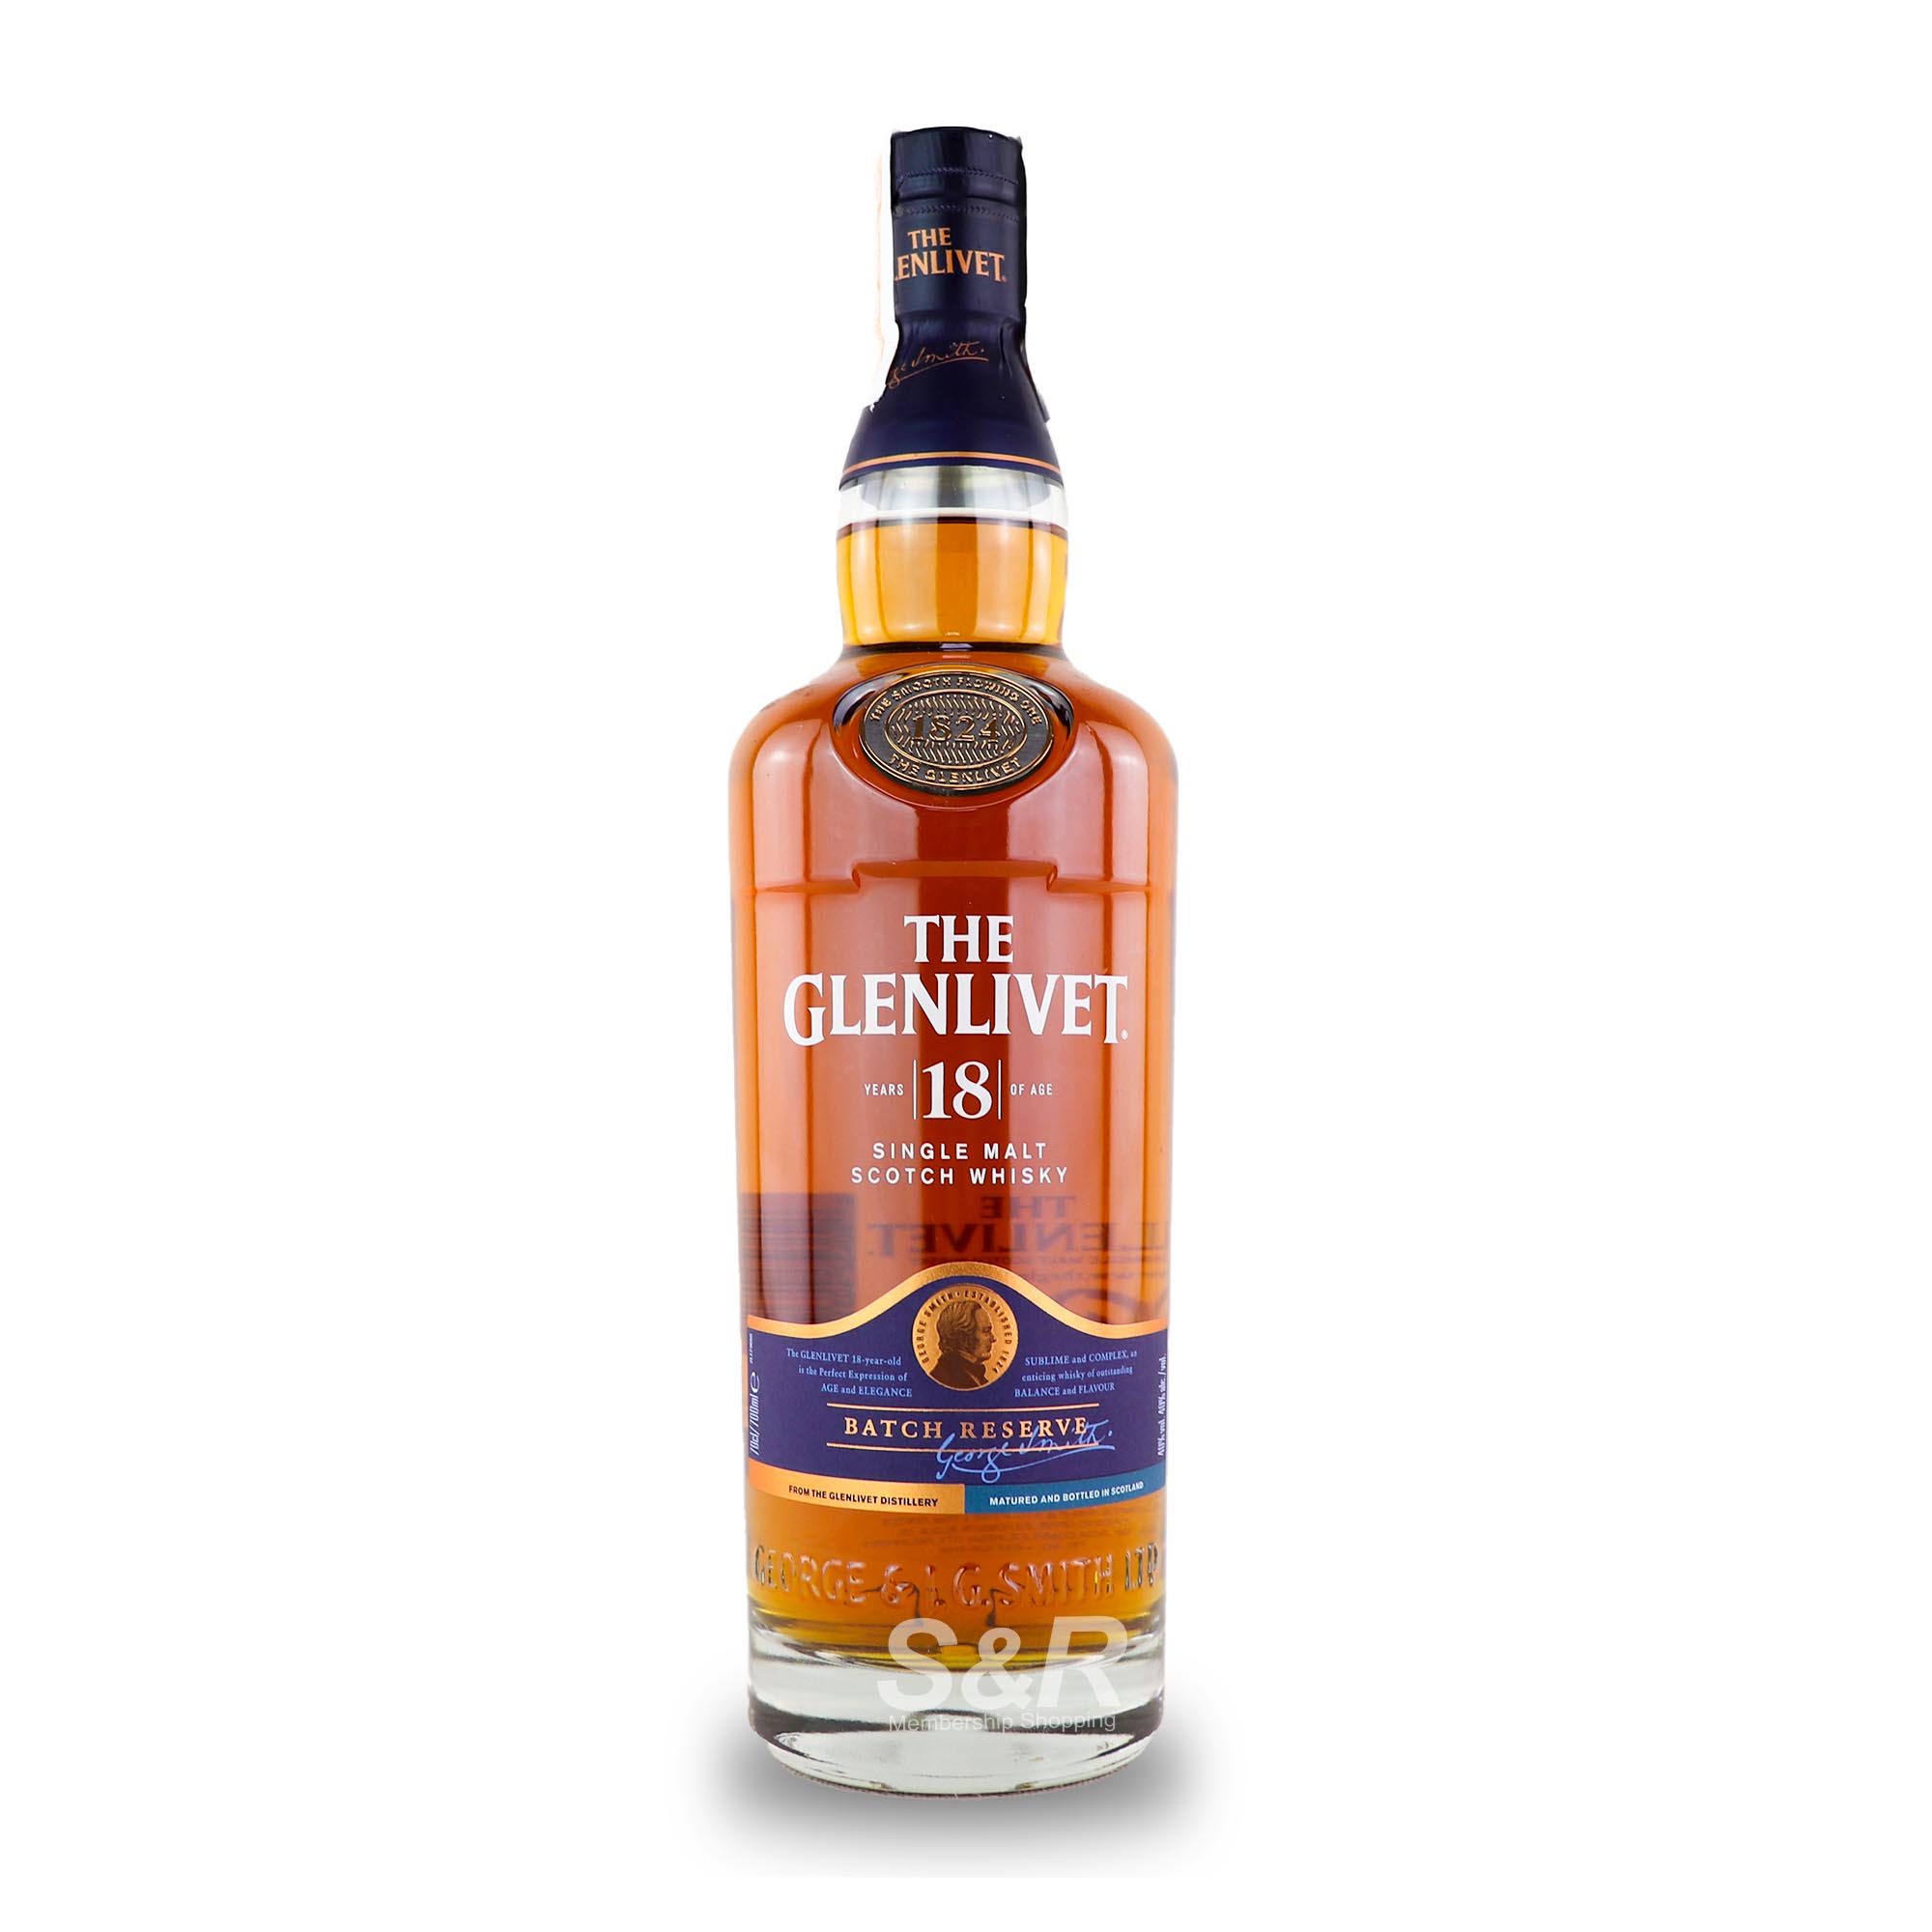 The Glenlivet Aged 18 Years Batch Reserve Single Malt Scotch Whisky 700mL